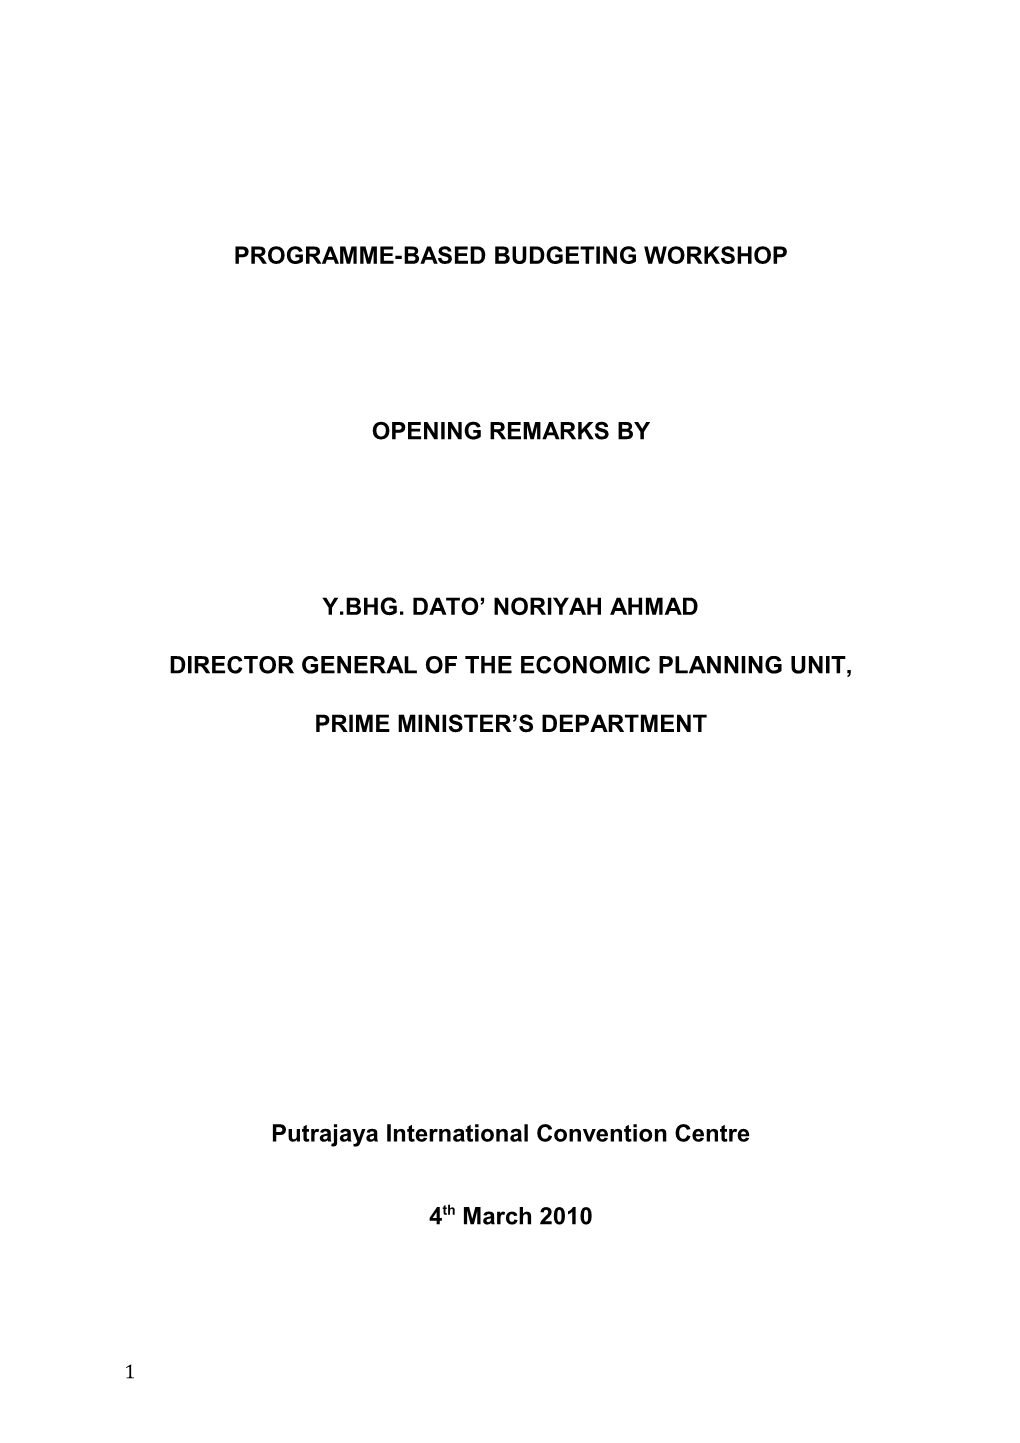 Programme-Based Budgeting Workshop